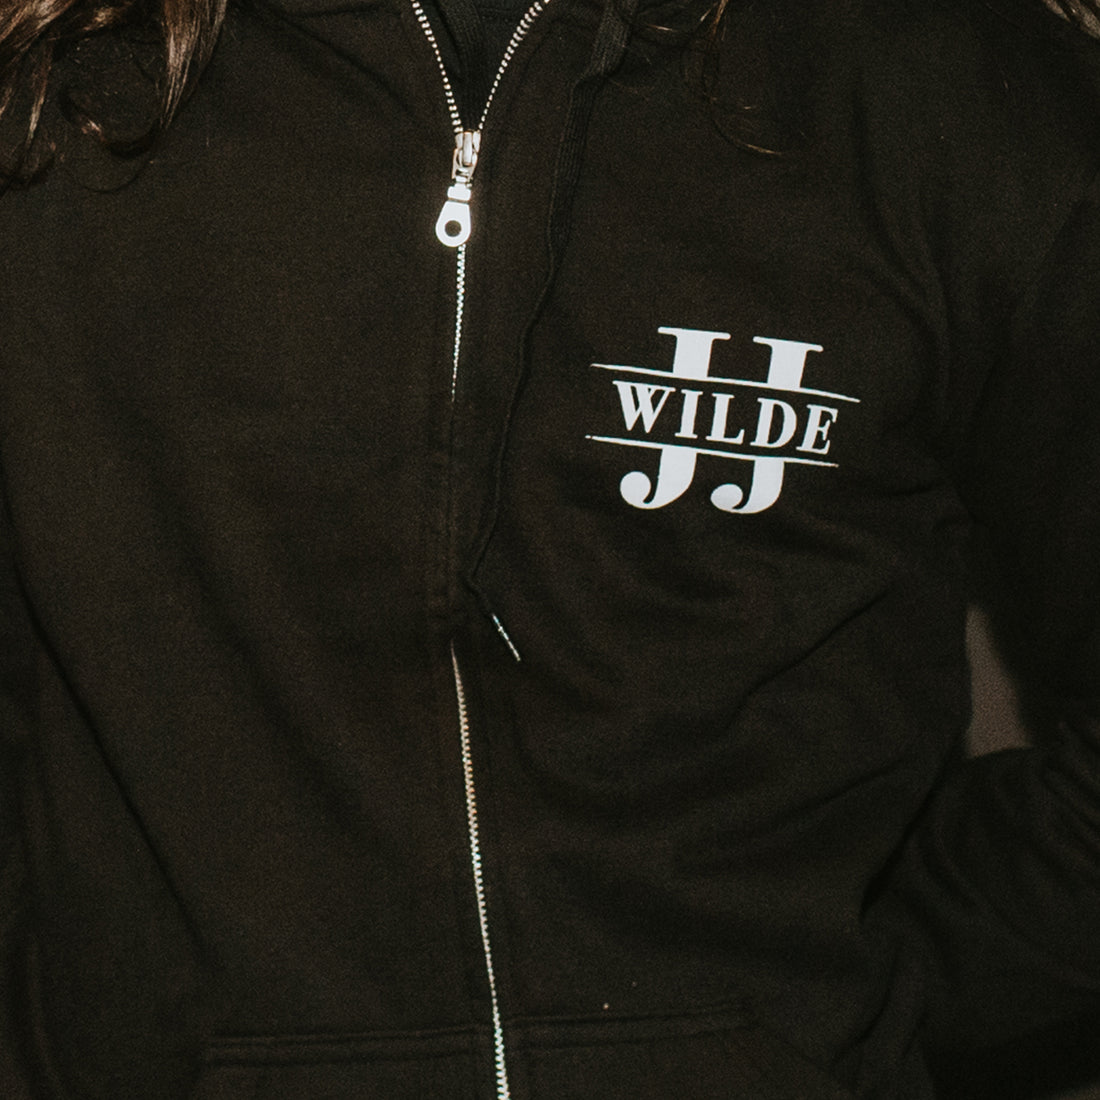 JJ Wilde - Logo Zip Hoodie